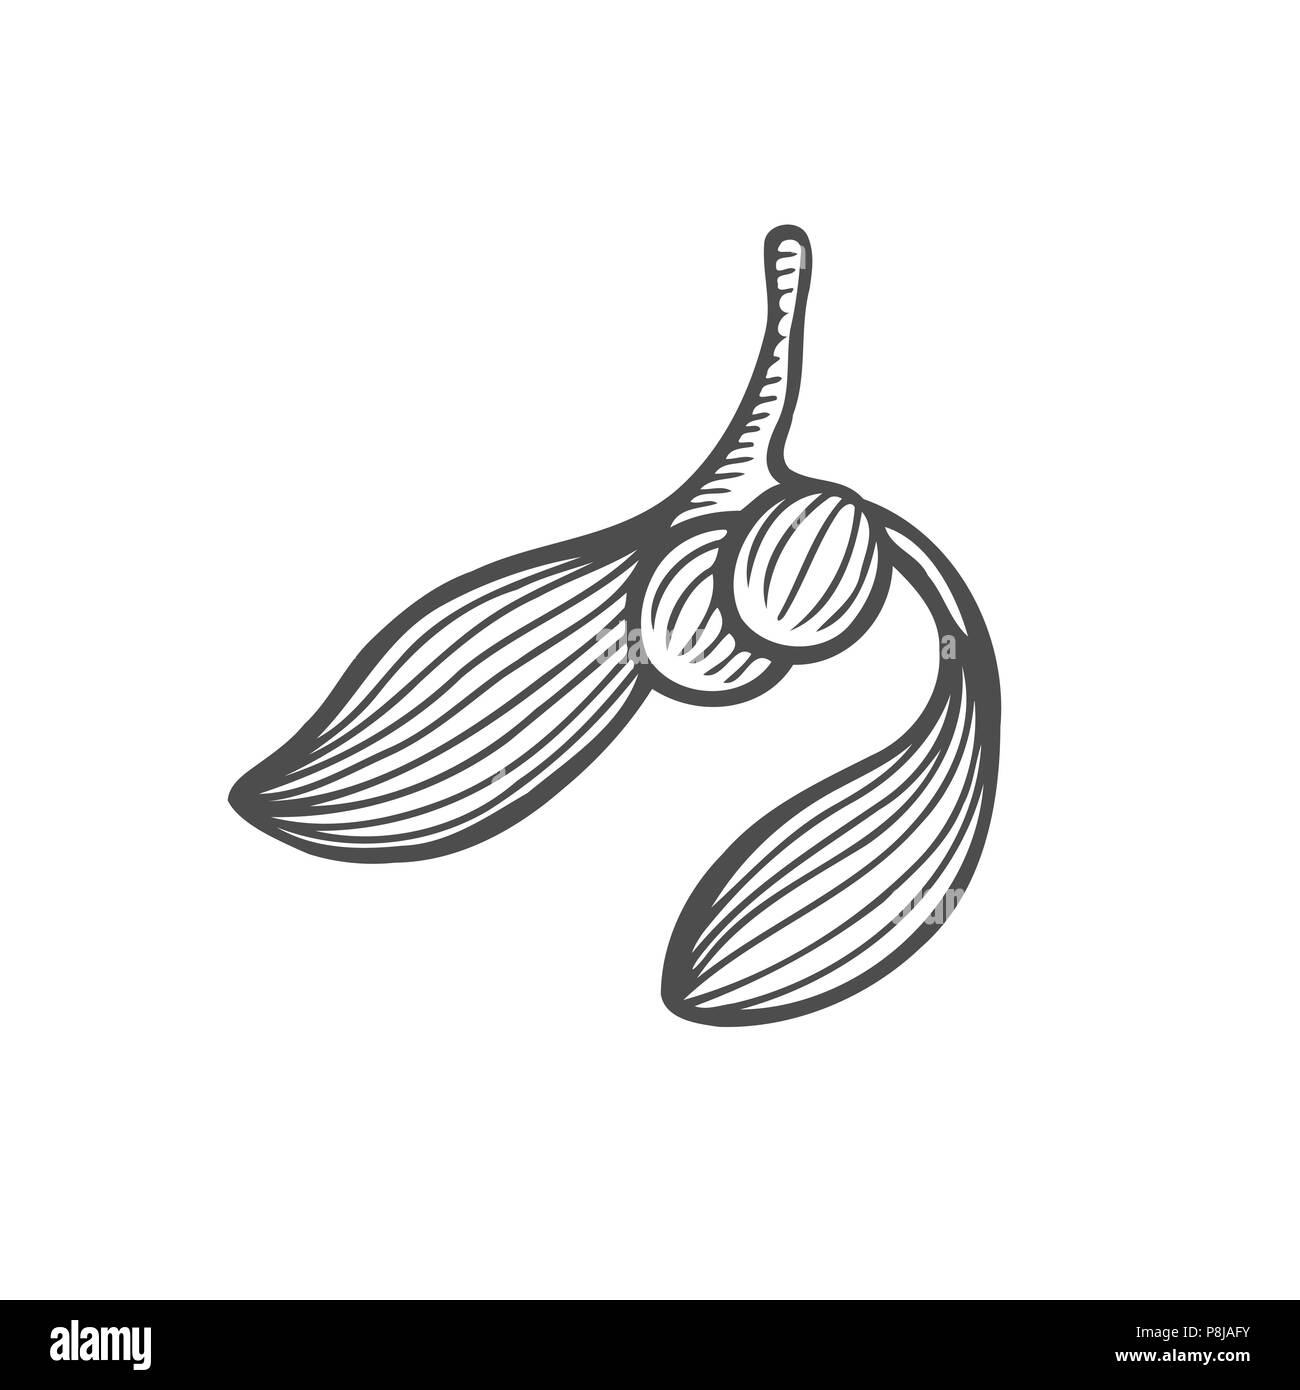 Tuschezeichnung des Mistel Ast mit Blätter, Früchte. Monochrom Design Element für Web, Print Vektor illustration Stock Vektor